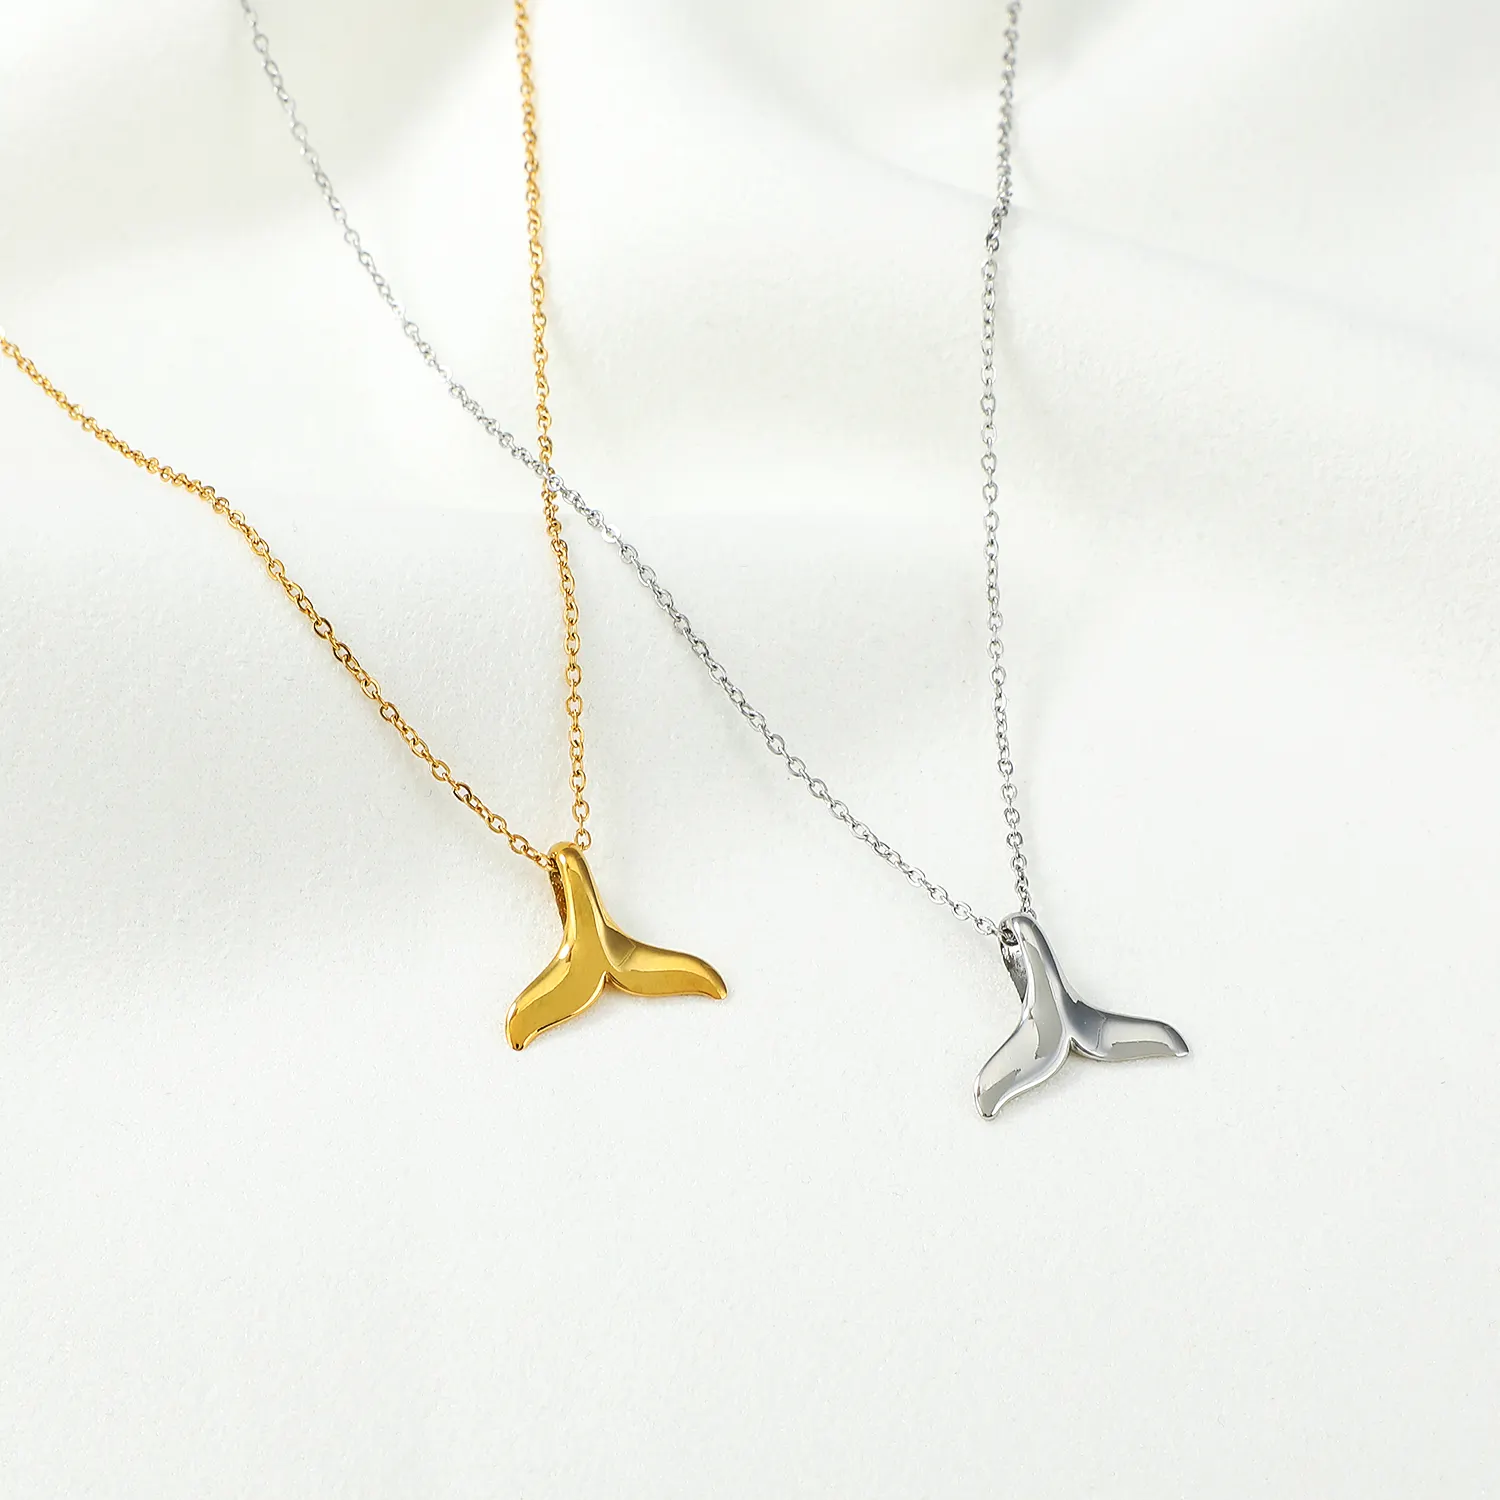 Joias requintadas de fábrica, joias personalizadas de 18k banhadas a ouro colar de cauda de baleias para mulheres e crianças